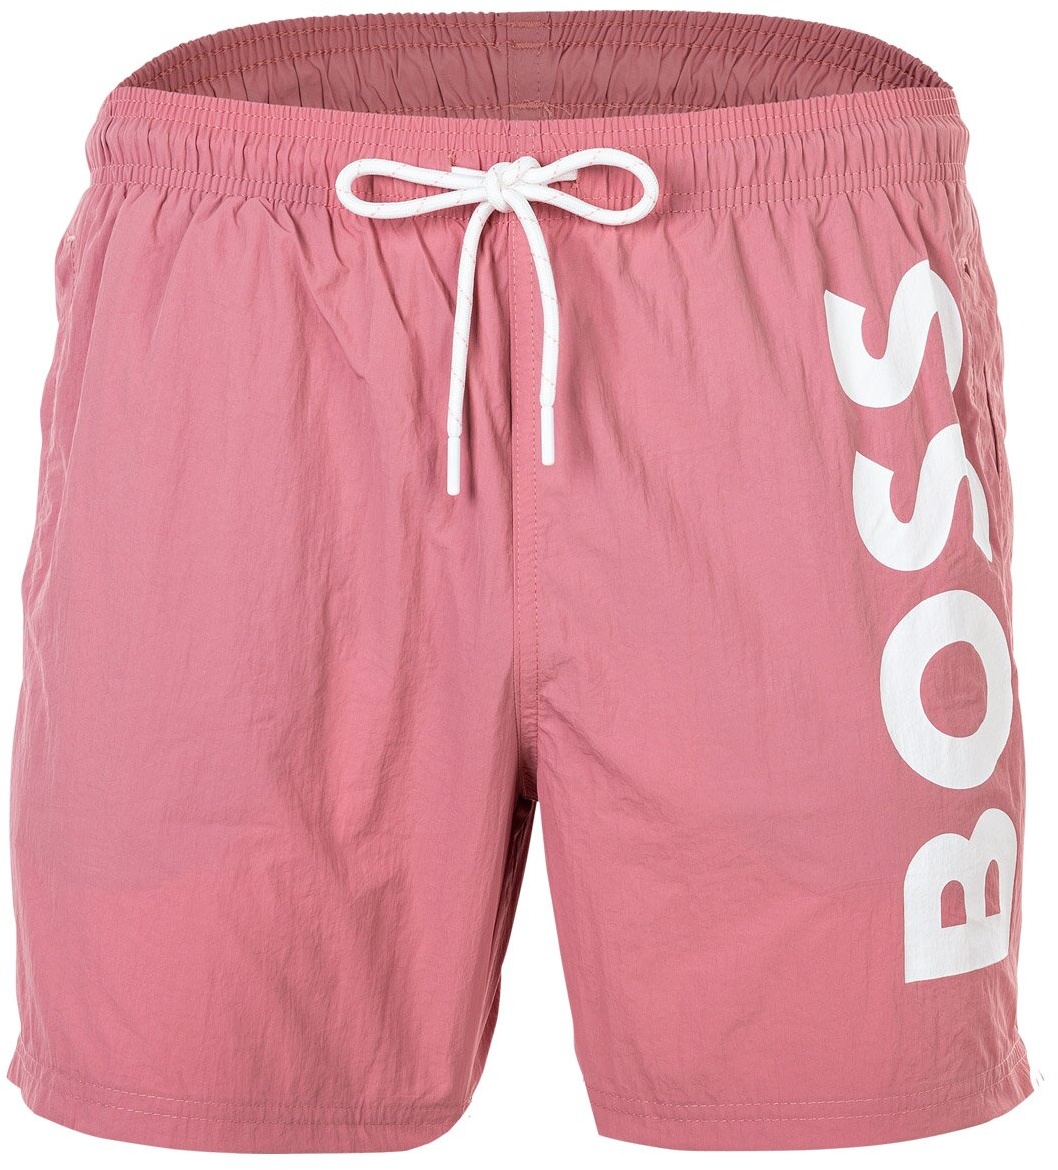 BOSS Herren Badeshorts - OCTOPUS, Swim Boxer, Badehose, gewebt, Logo, einfarbig Pink (Open Pink) L